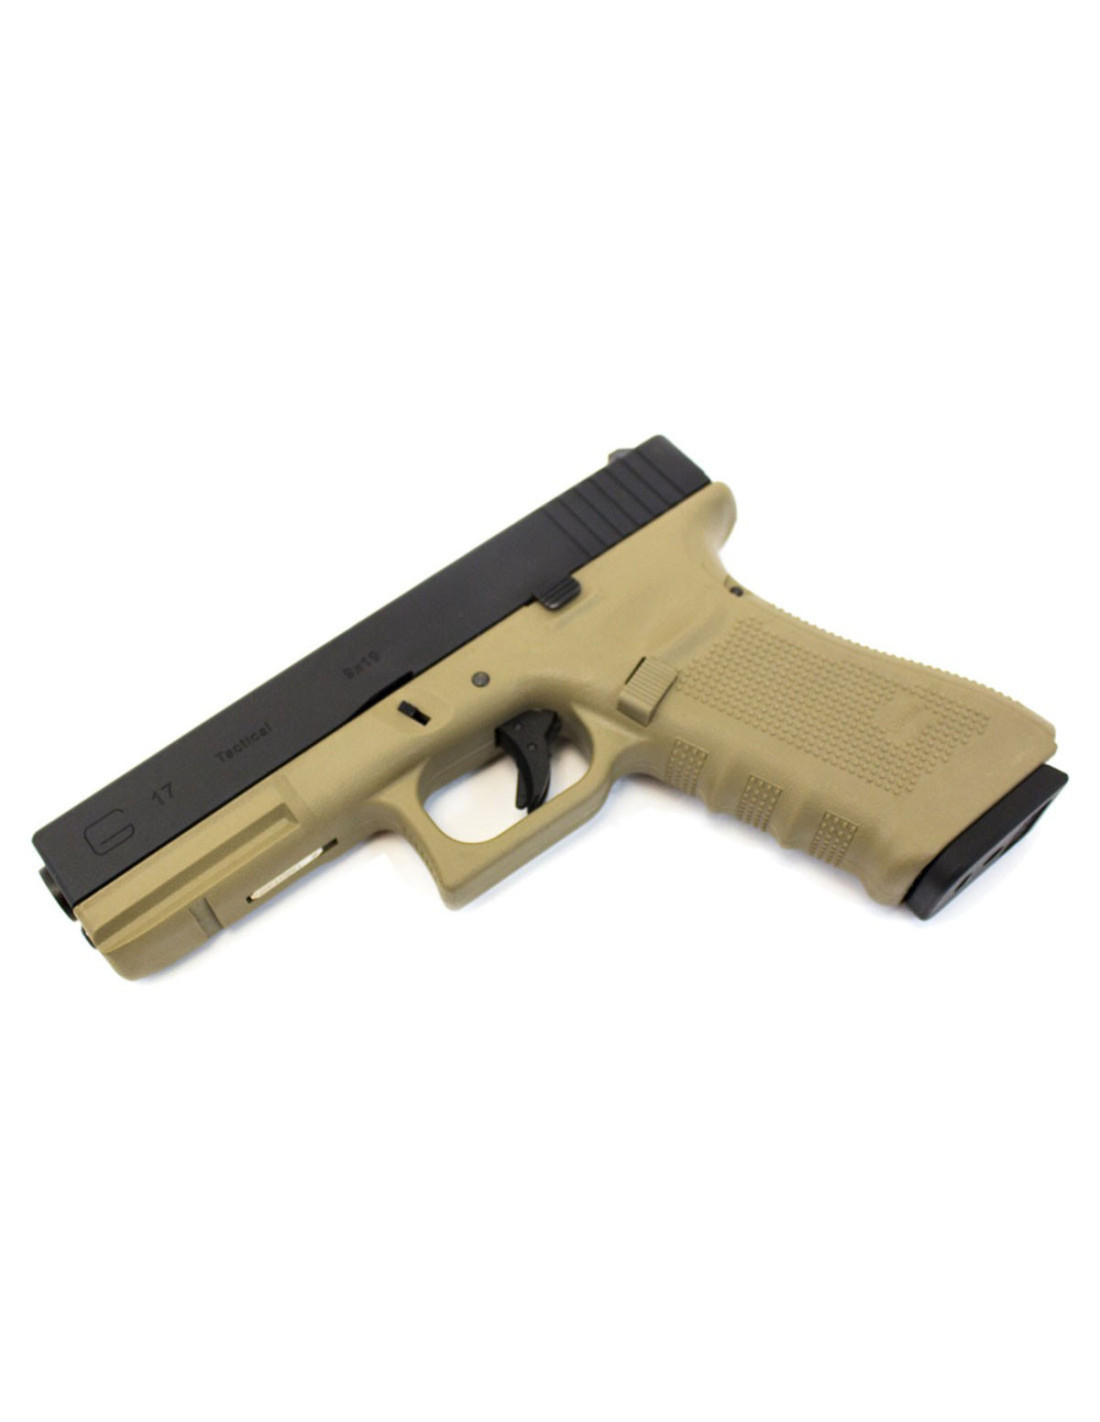 pistola glock 17 we tan - WE - Tienda de Airsoft, replicas y ropa militar  con stock real .